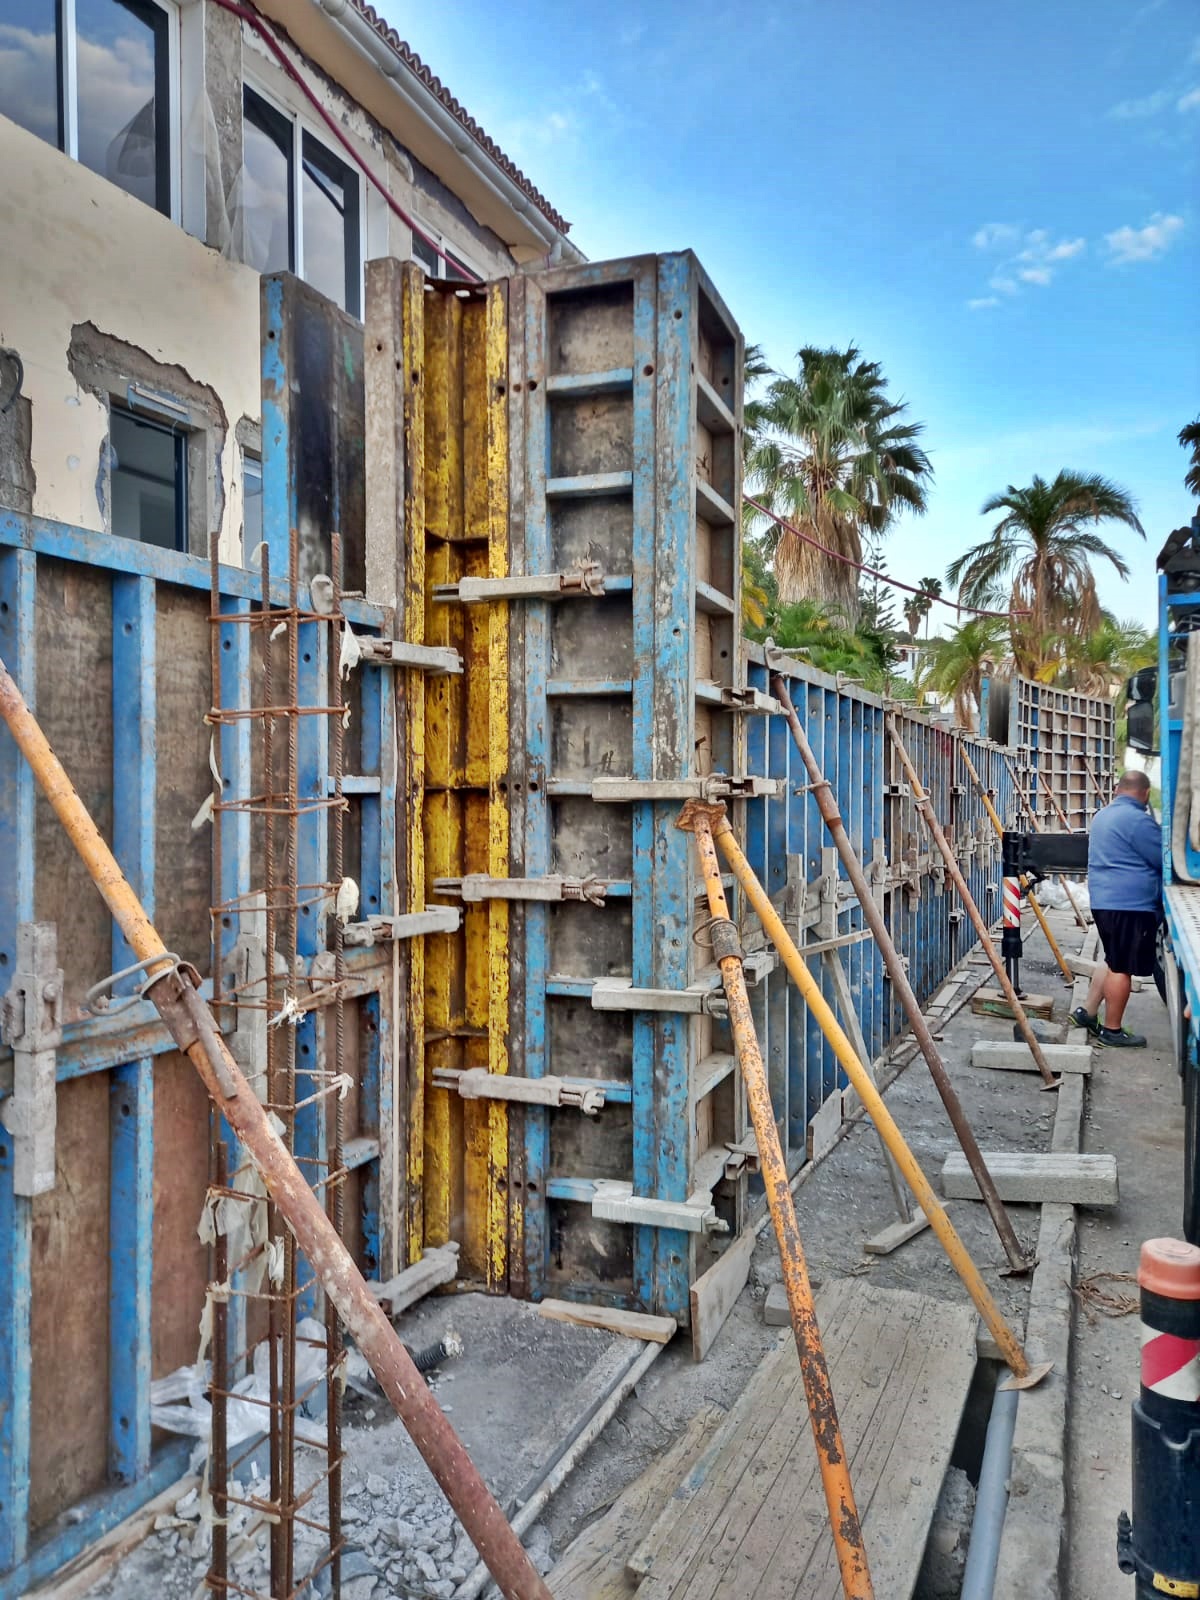 Alquiler de maquinaria y materiales para construcción. Tenerife.